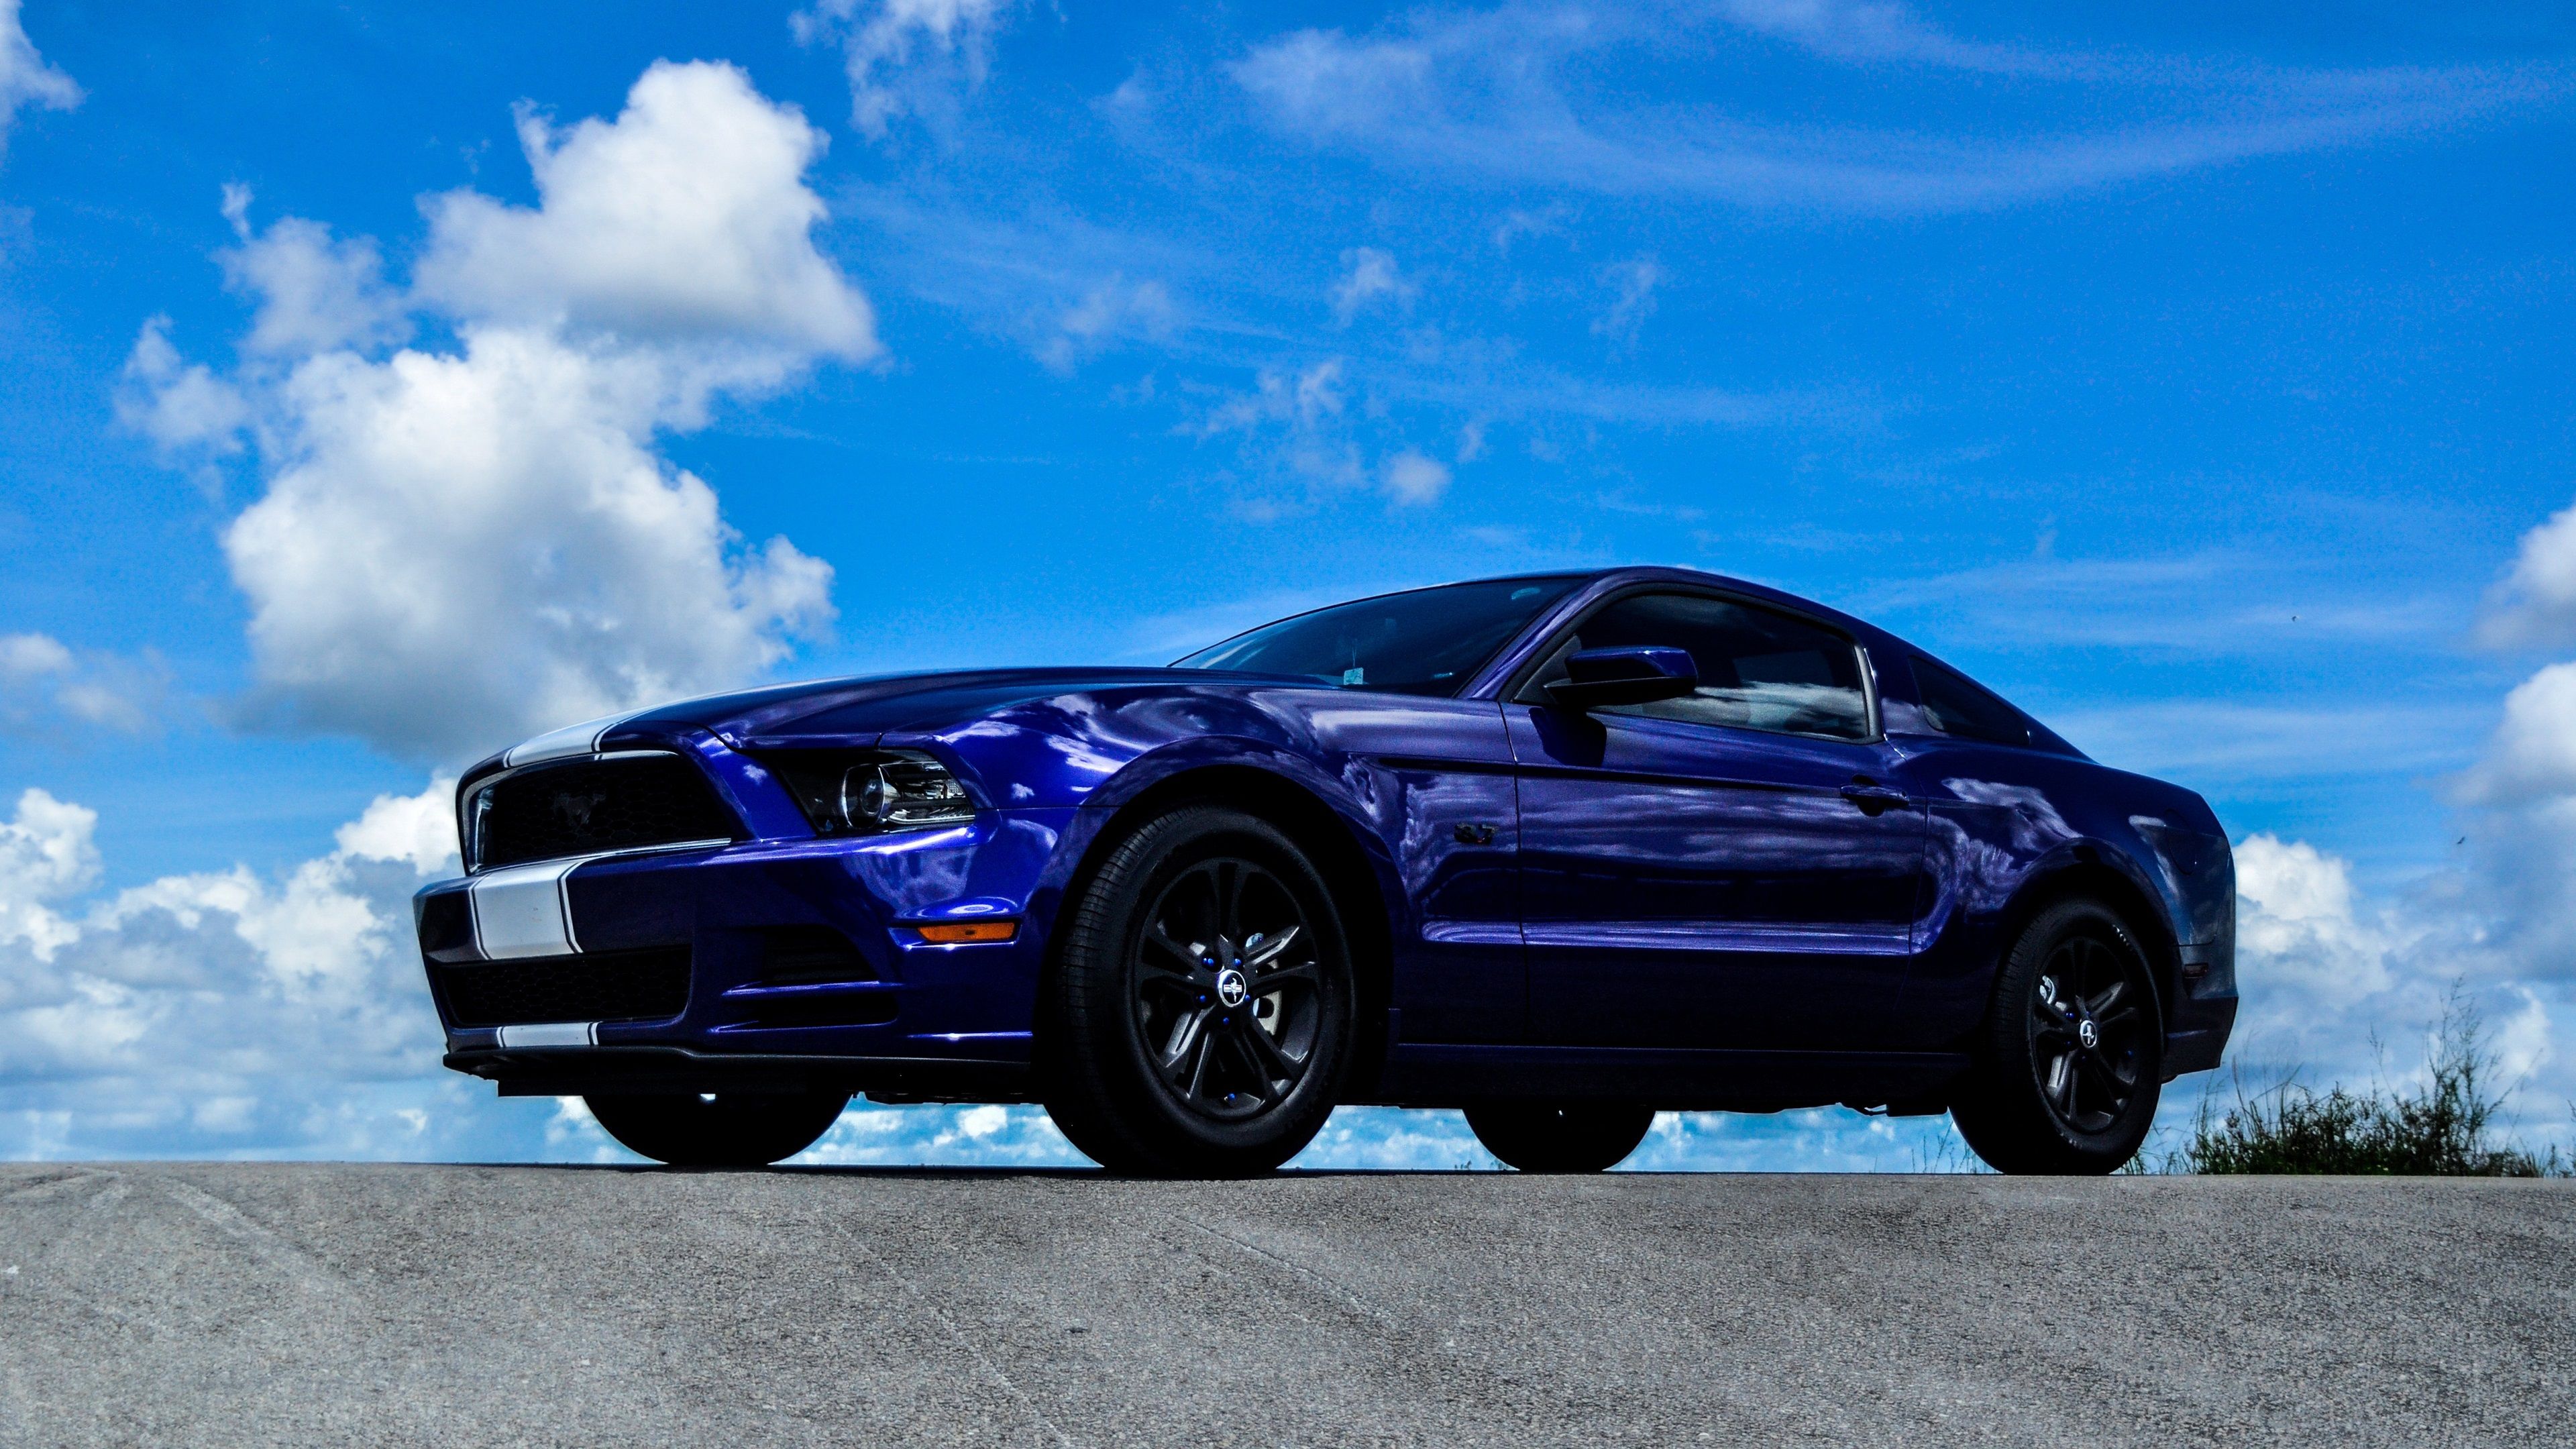  Ford Hintergrundbild 3840x2160. Ford Mustang blau Auto Seitenansicht 3840x2160 UHD 4K Hintergrundbilder, HD, Bild